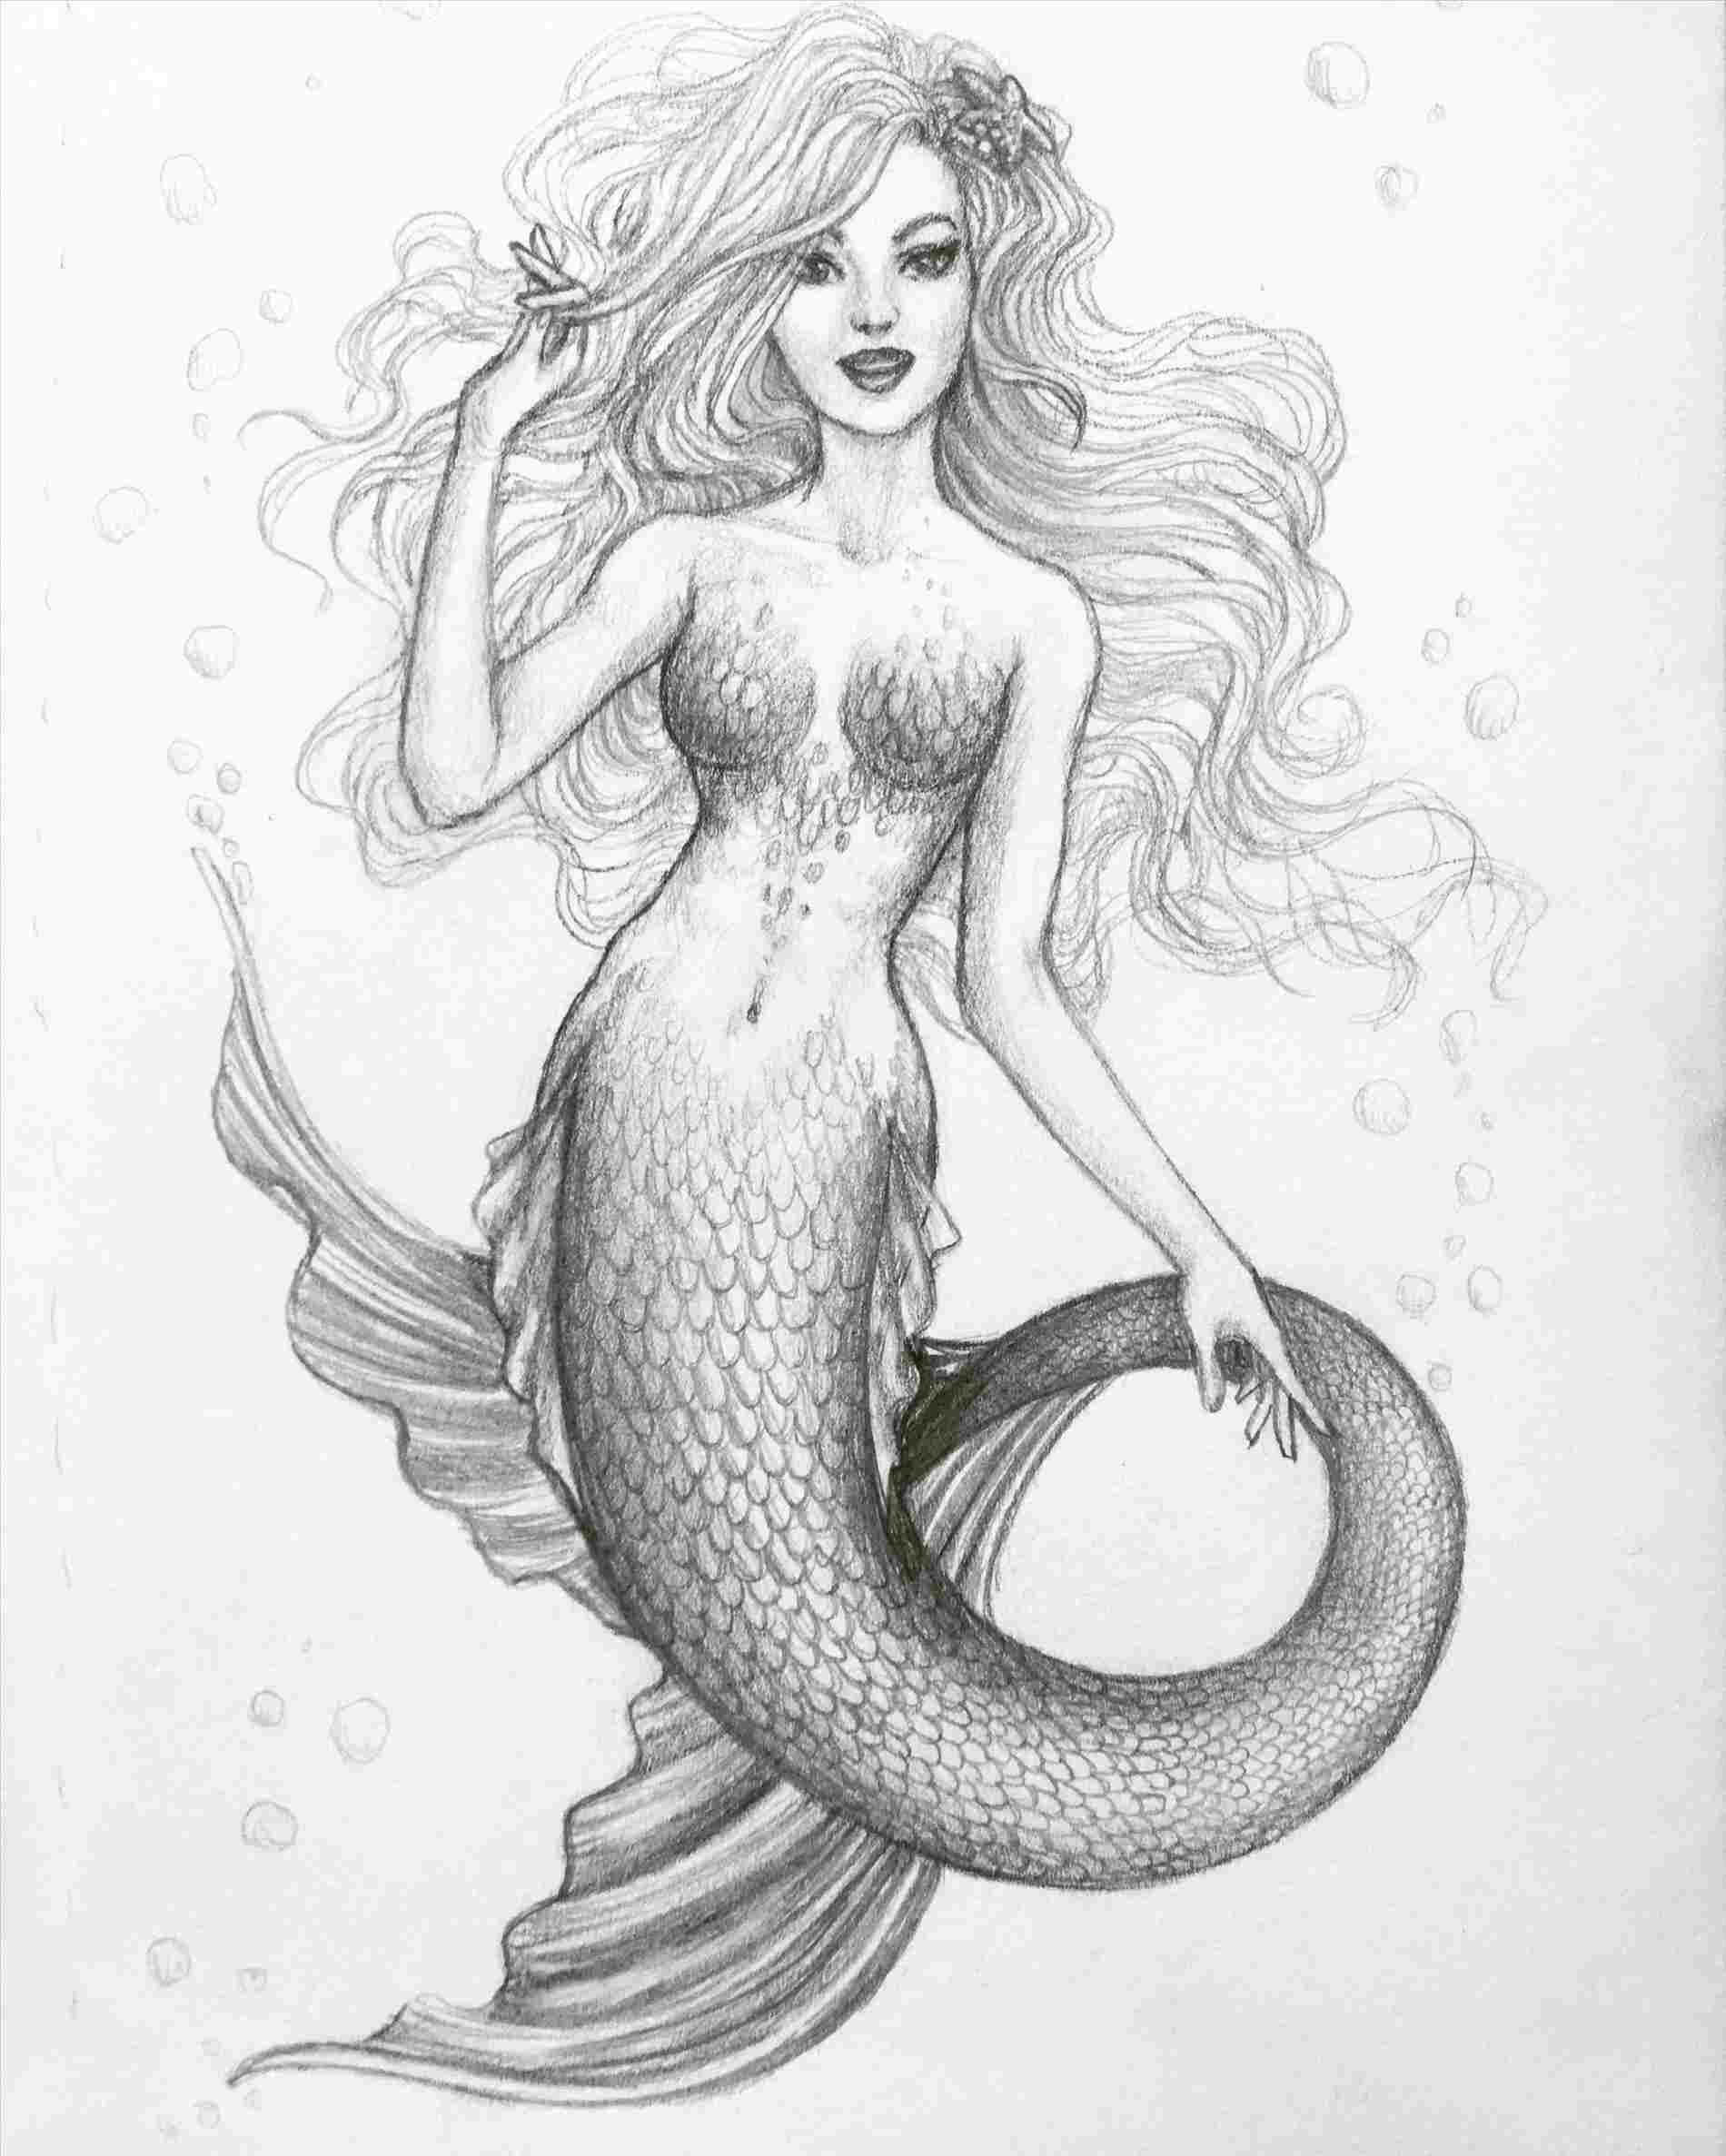 Evil mermaid drawing - ðŸ§¡ how to draw mouths Mermaid artwork, Mermaid dr...